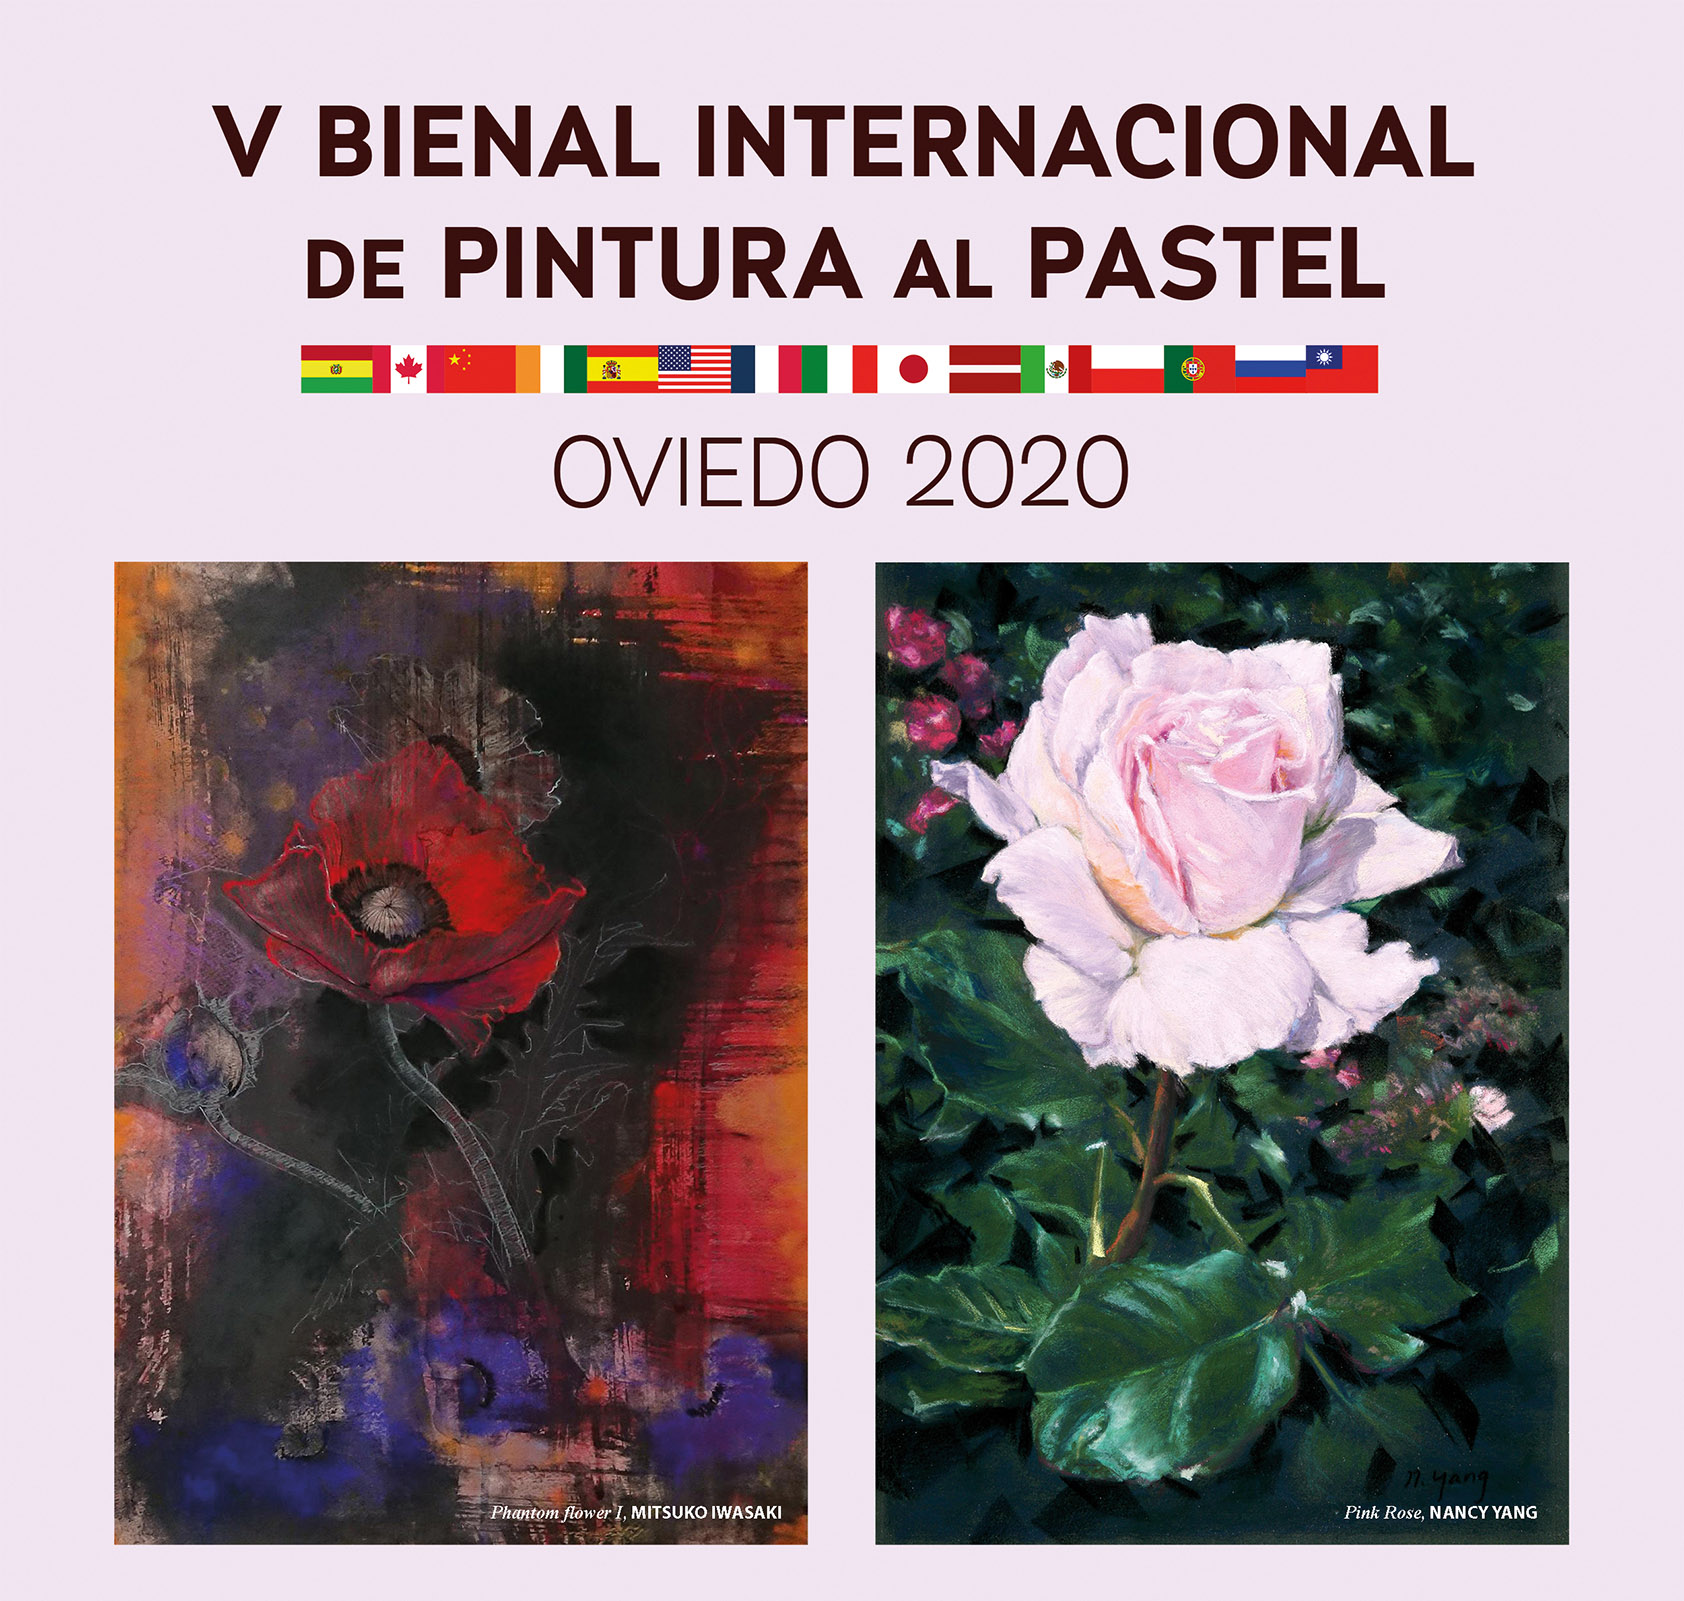 ESPAÑA-OVIEDO: Finalista en la V Bienal Internacional de Pintura al Pastel 2020